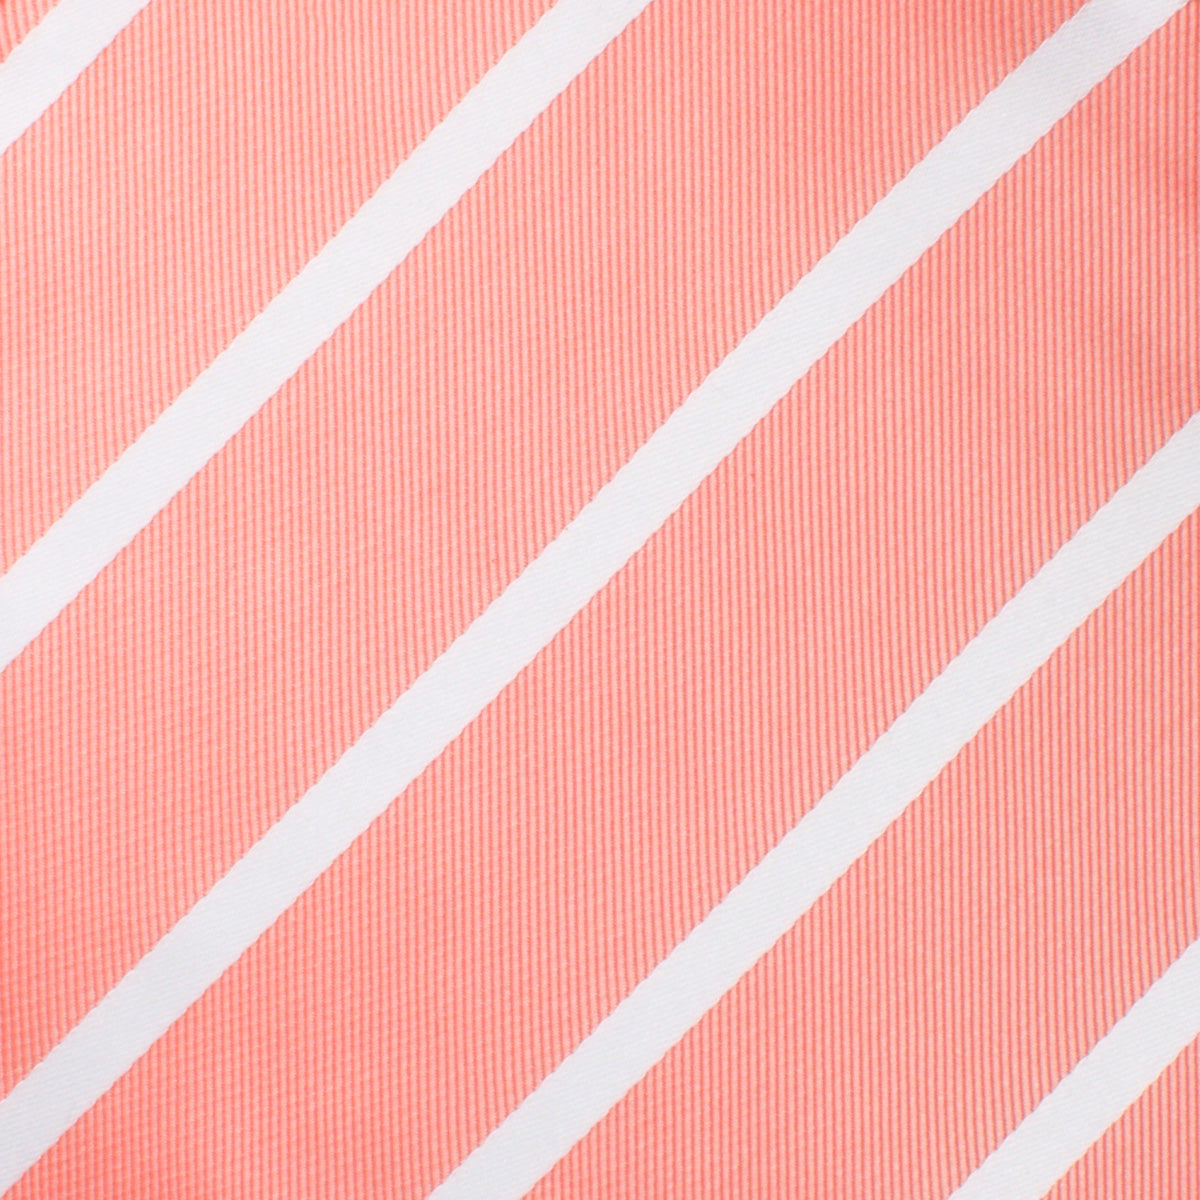 Peach Striped Necktie Fabric